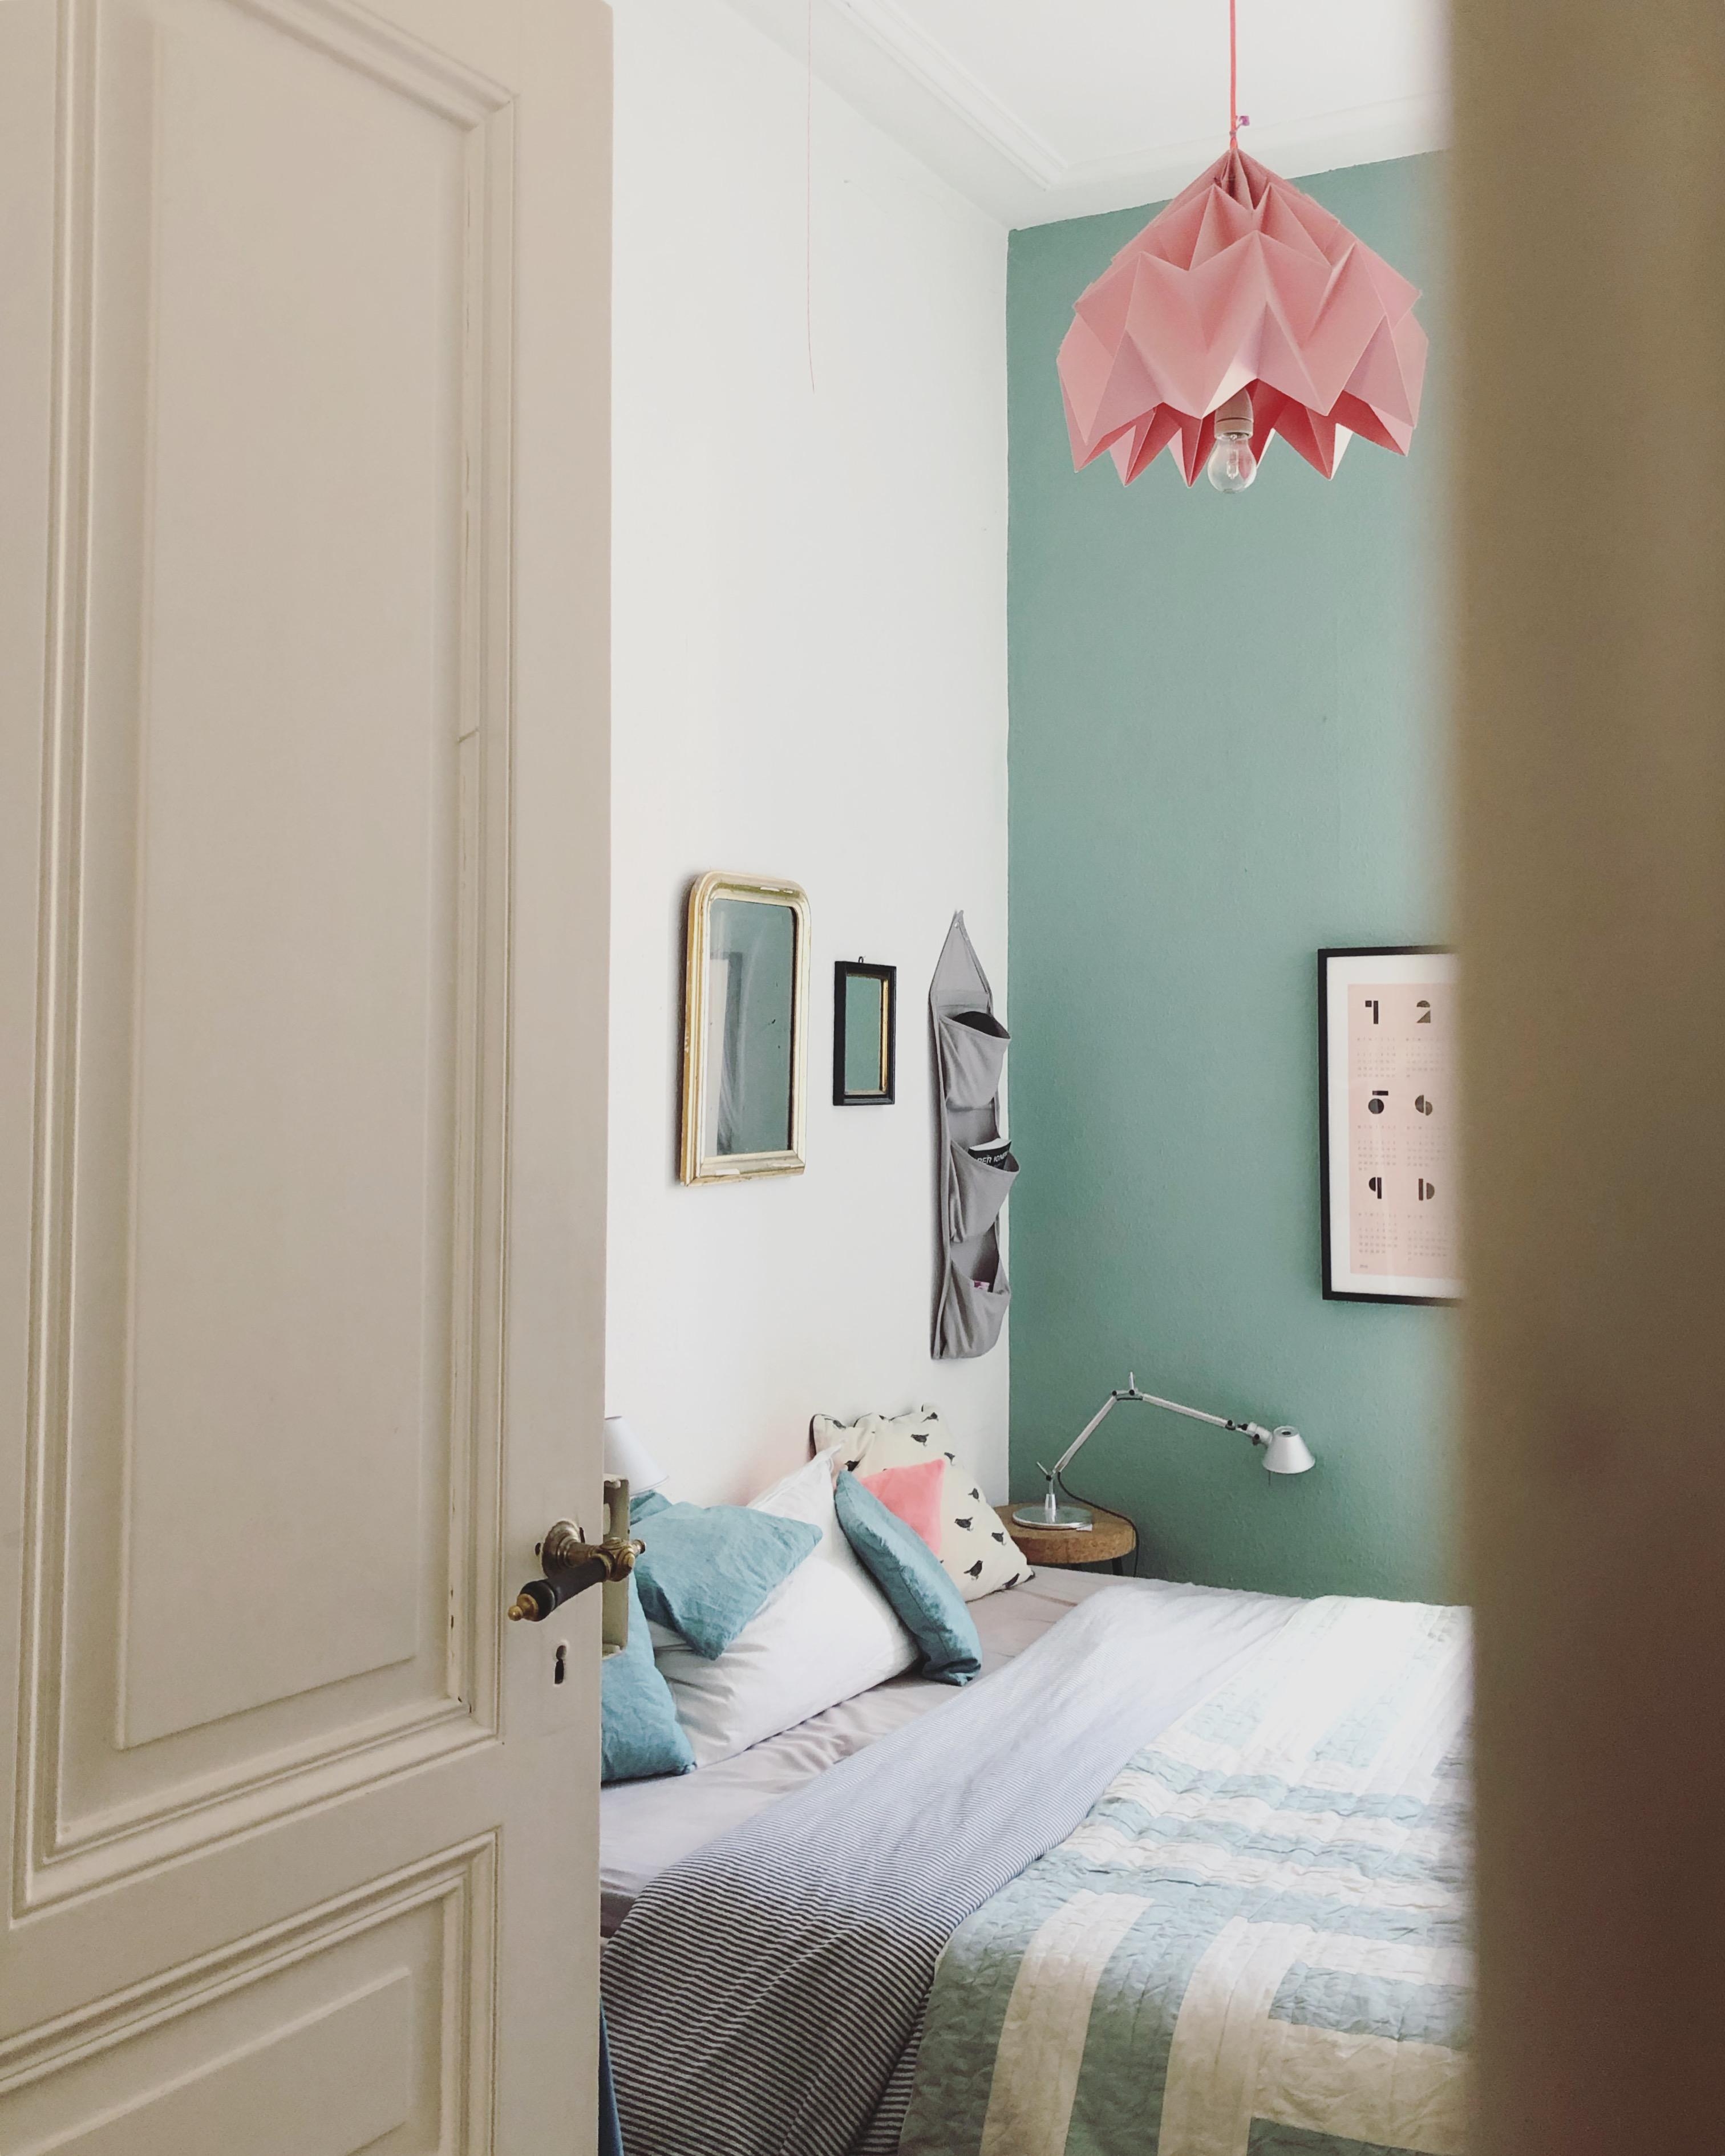 Unser kleinstes Zimmerchen mit nur 12qm #cozybedroom #bedroom #interior #couchstyle #interiordesign